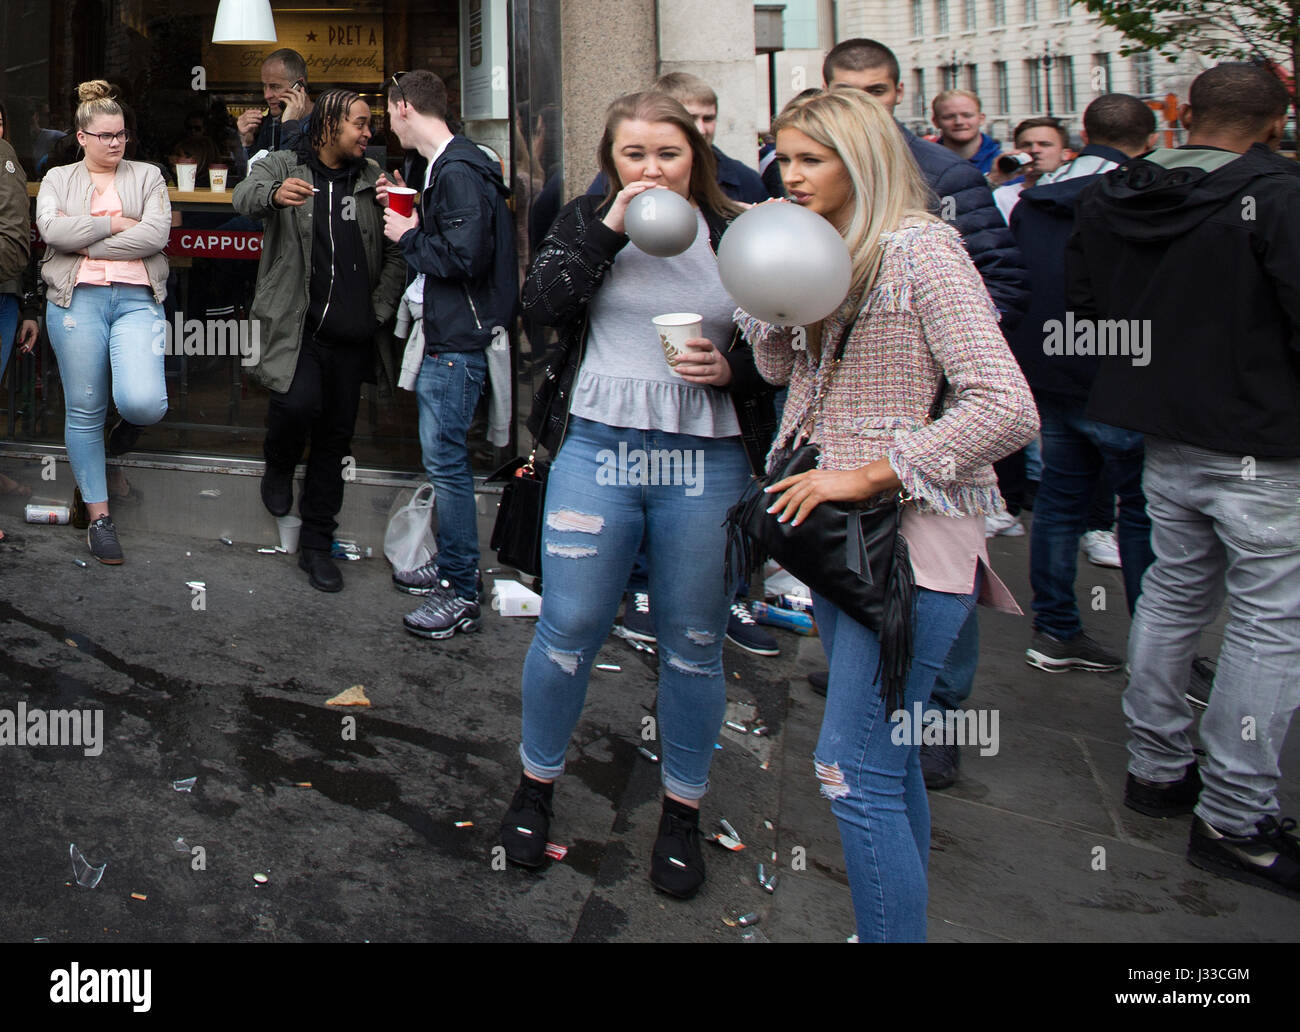 Les jeunes dans les rues de Londres en tenant euphorisants légaux, reniflant de protoxyde d'azote inhalé en ballons, Tower Bridge, London, UK Banque D'Images